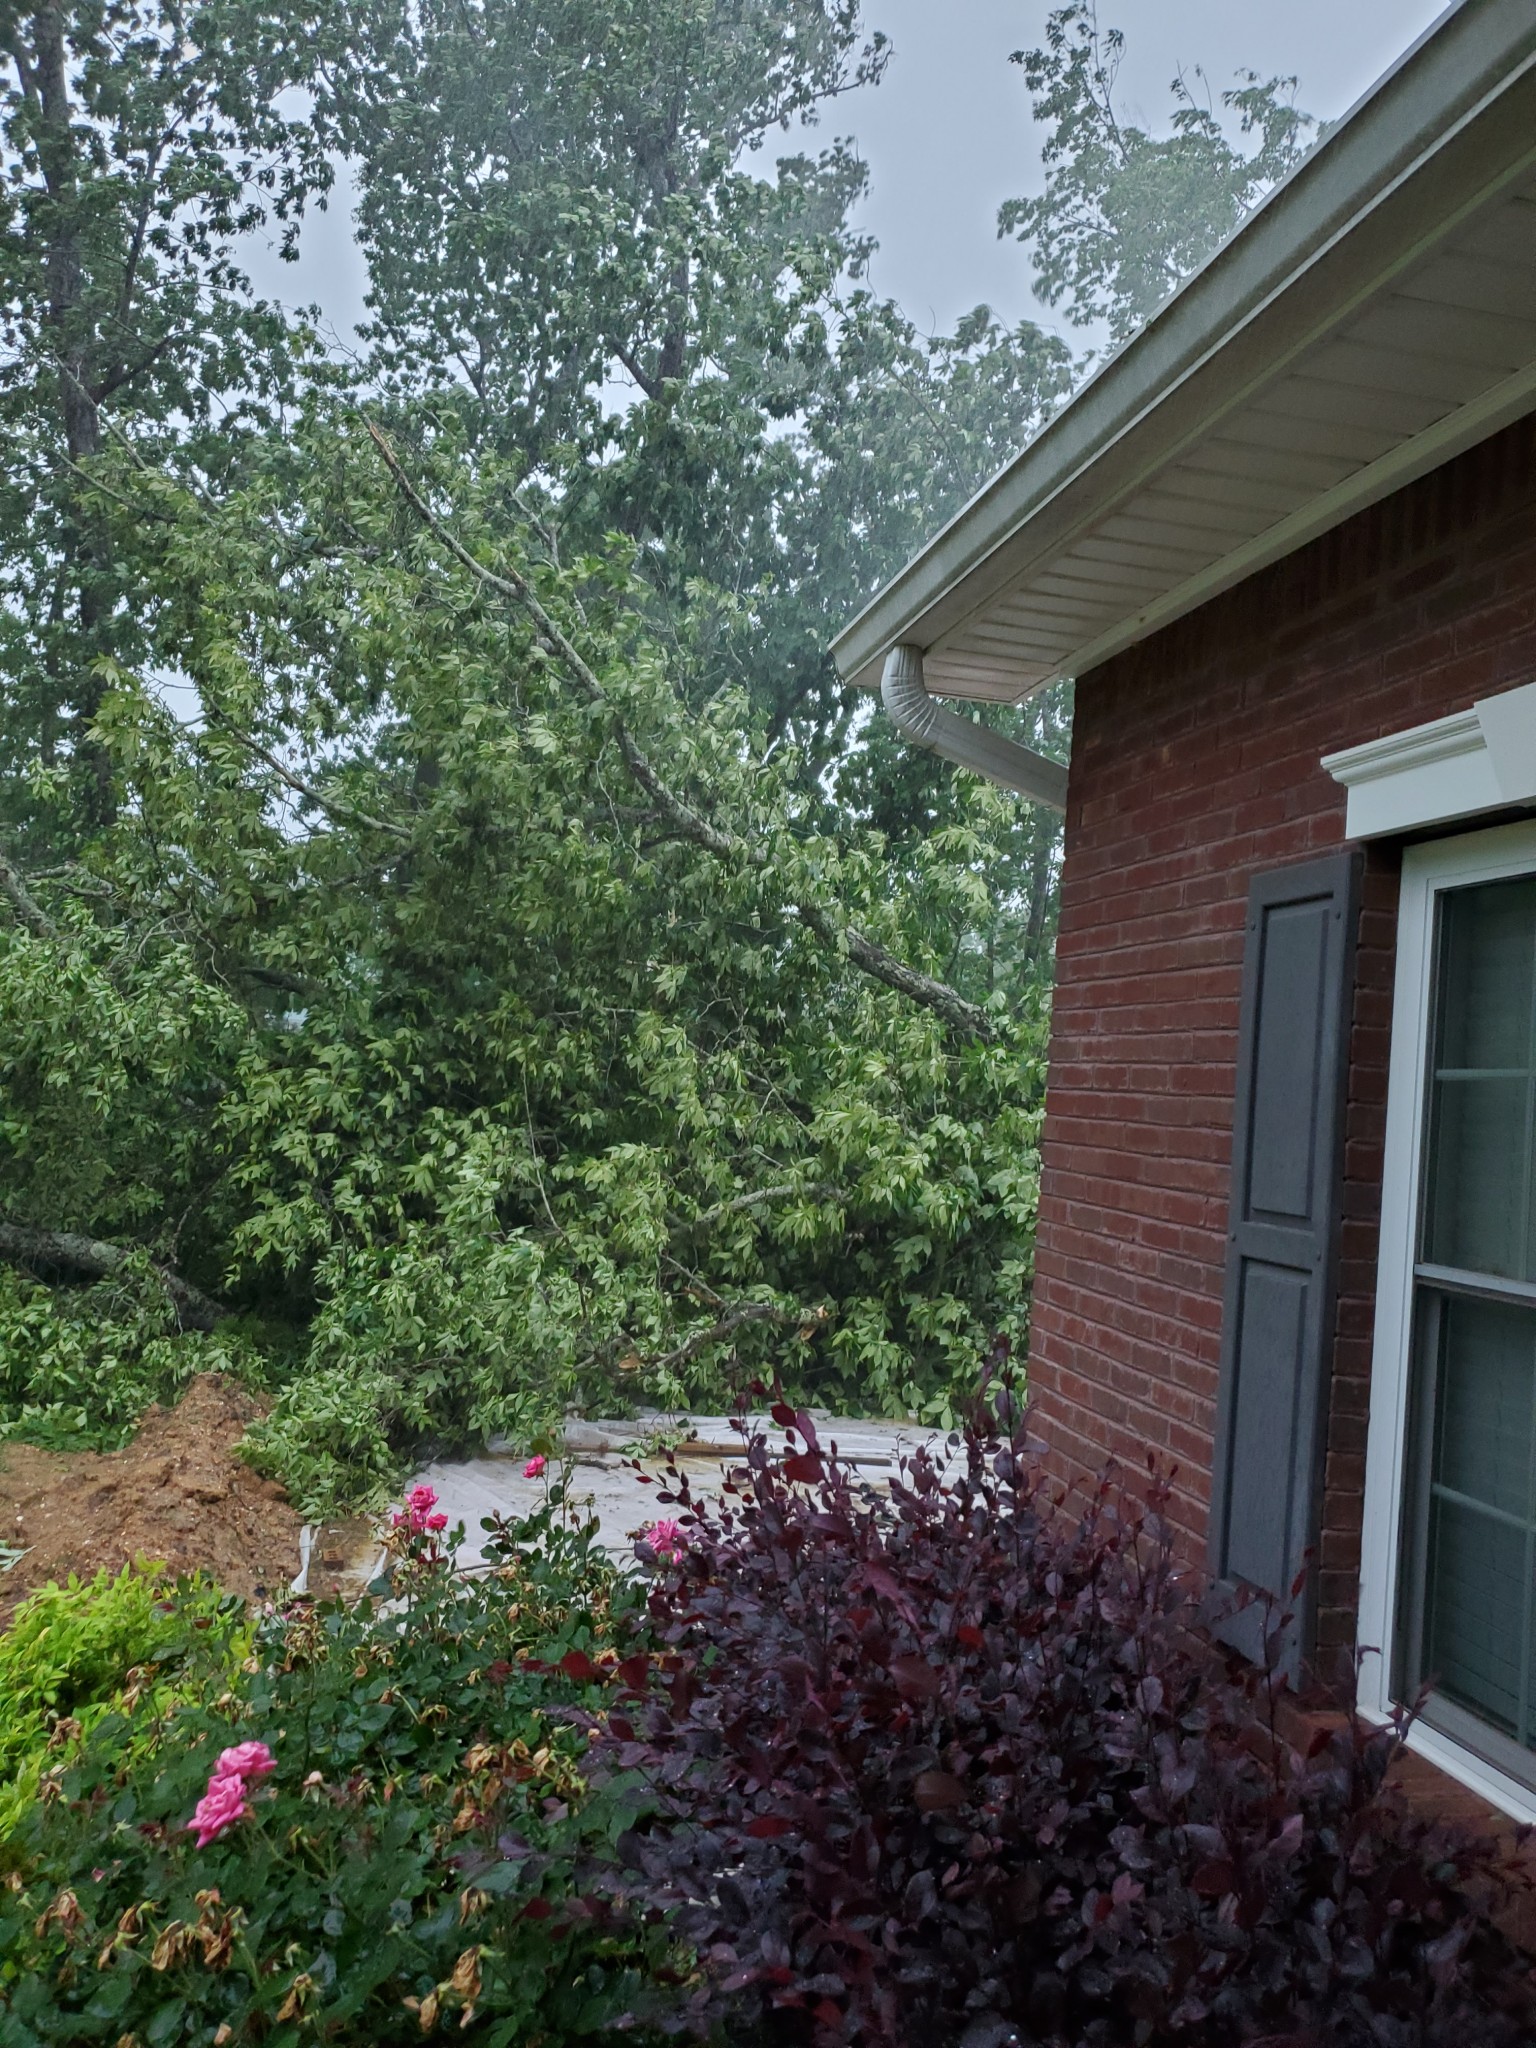 PHOTOS: Storm Damage in Camden - Alabama News